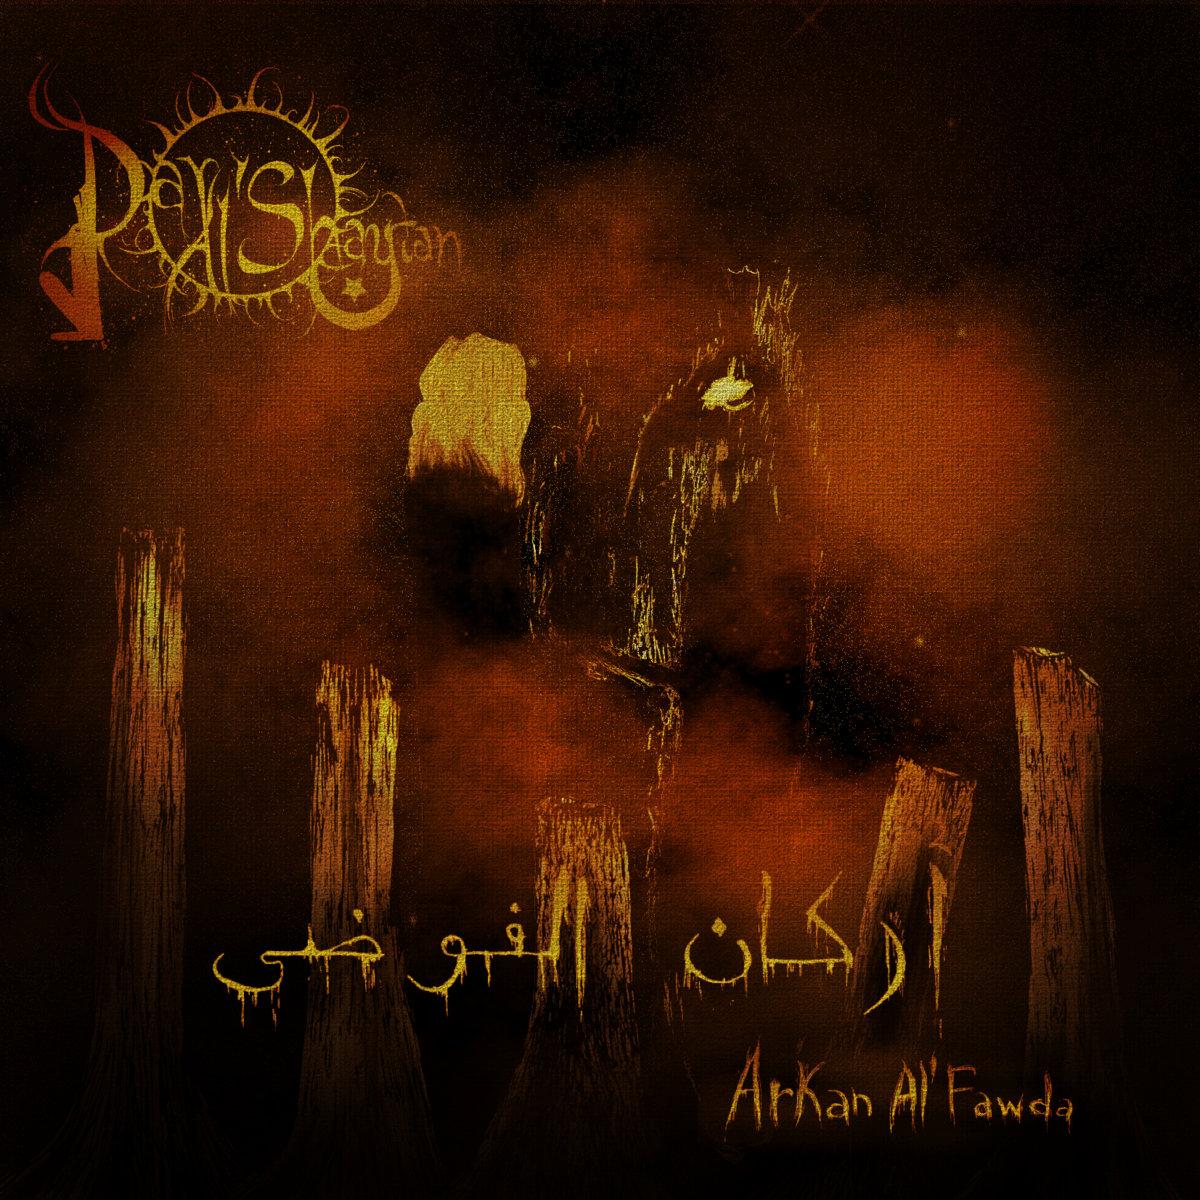 Dar Al'Shaytan - Oriental Black/Death